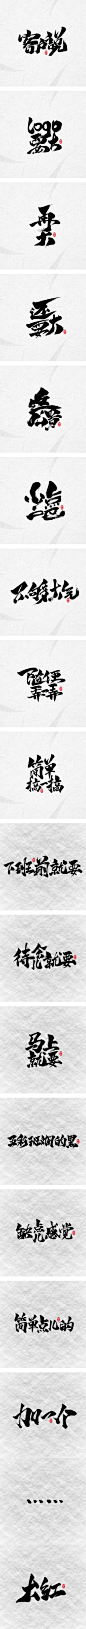 毛笔字说-那些设计师心中永远的痛-字体传奇网-中国首个字体品牌设计师交流网